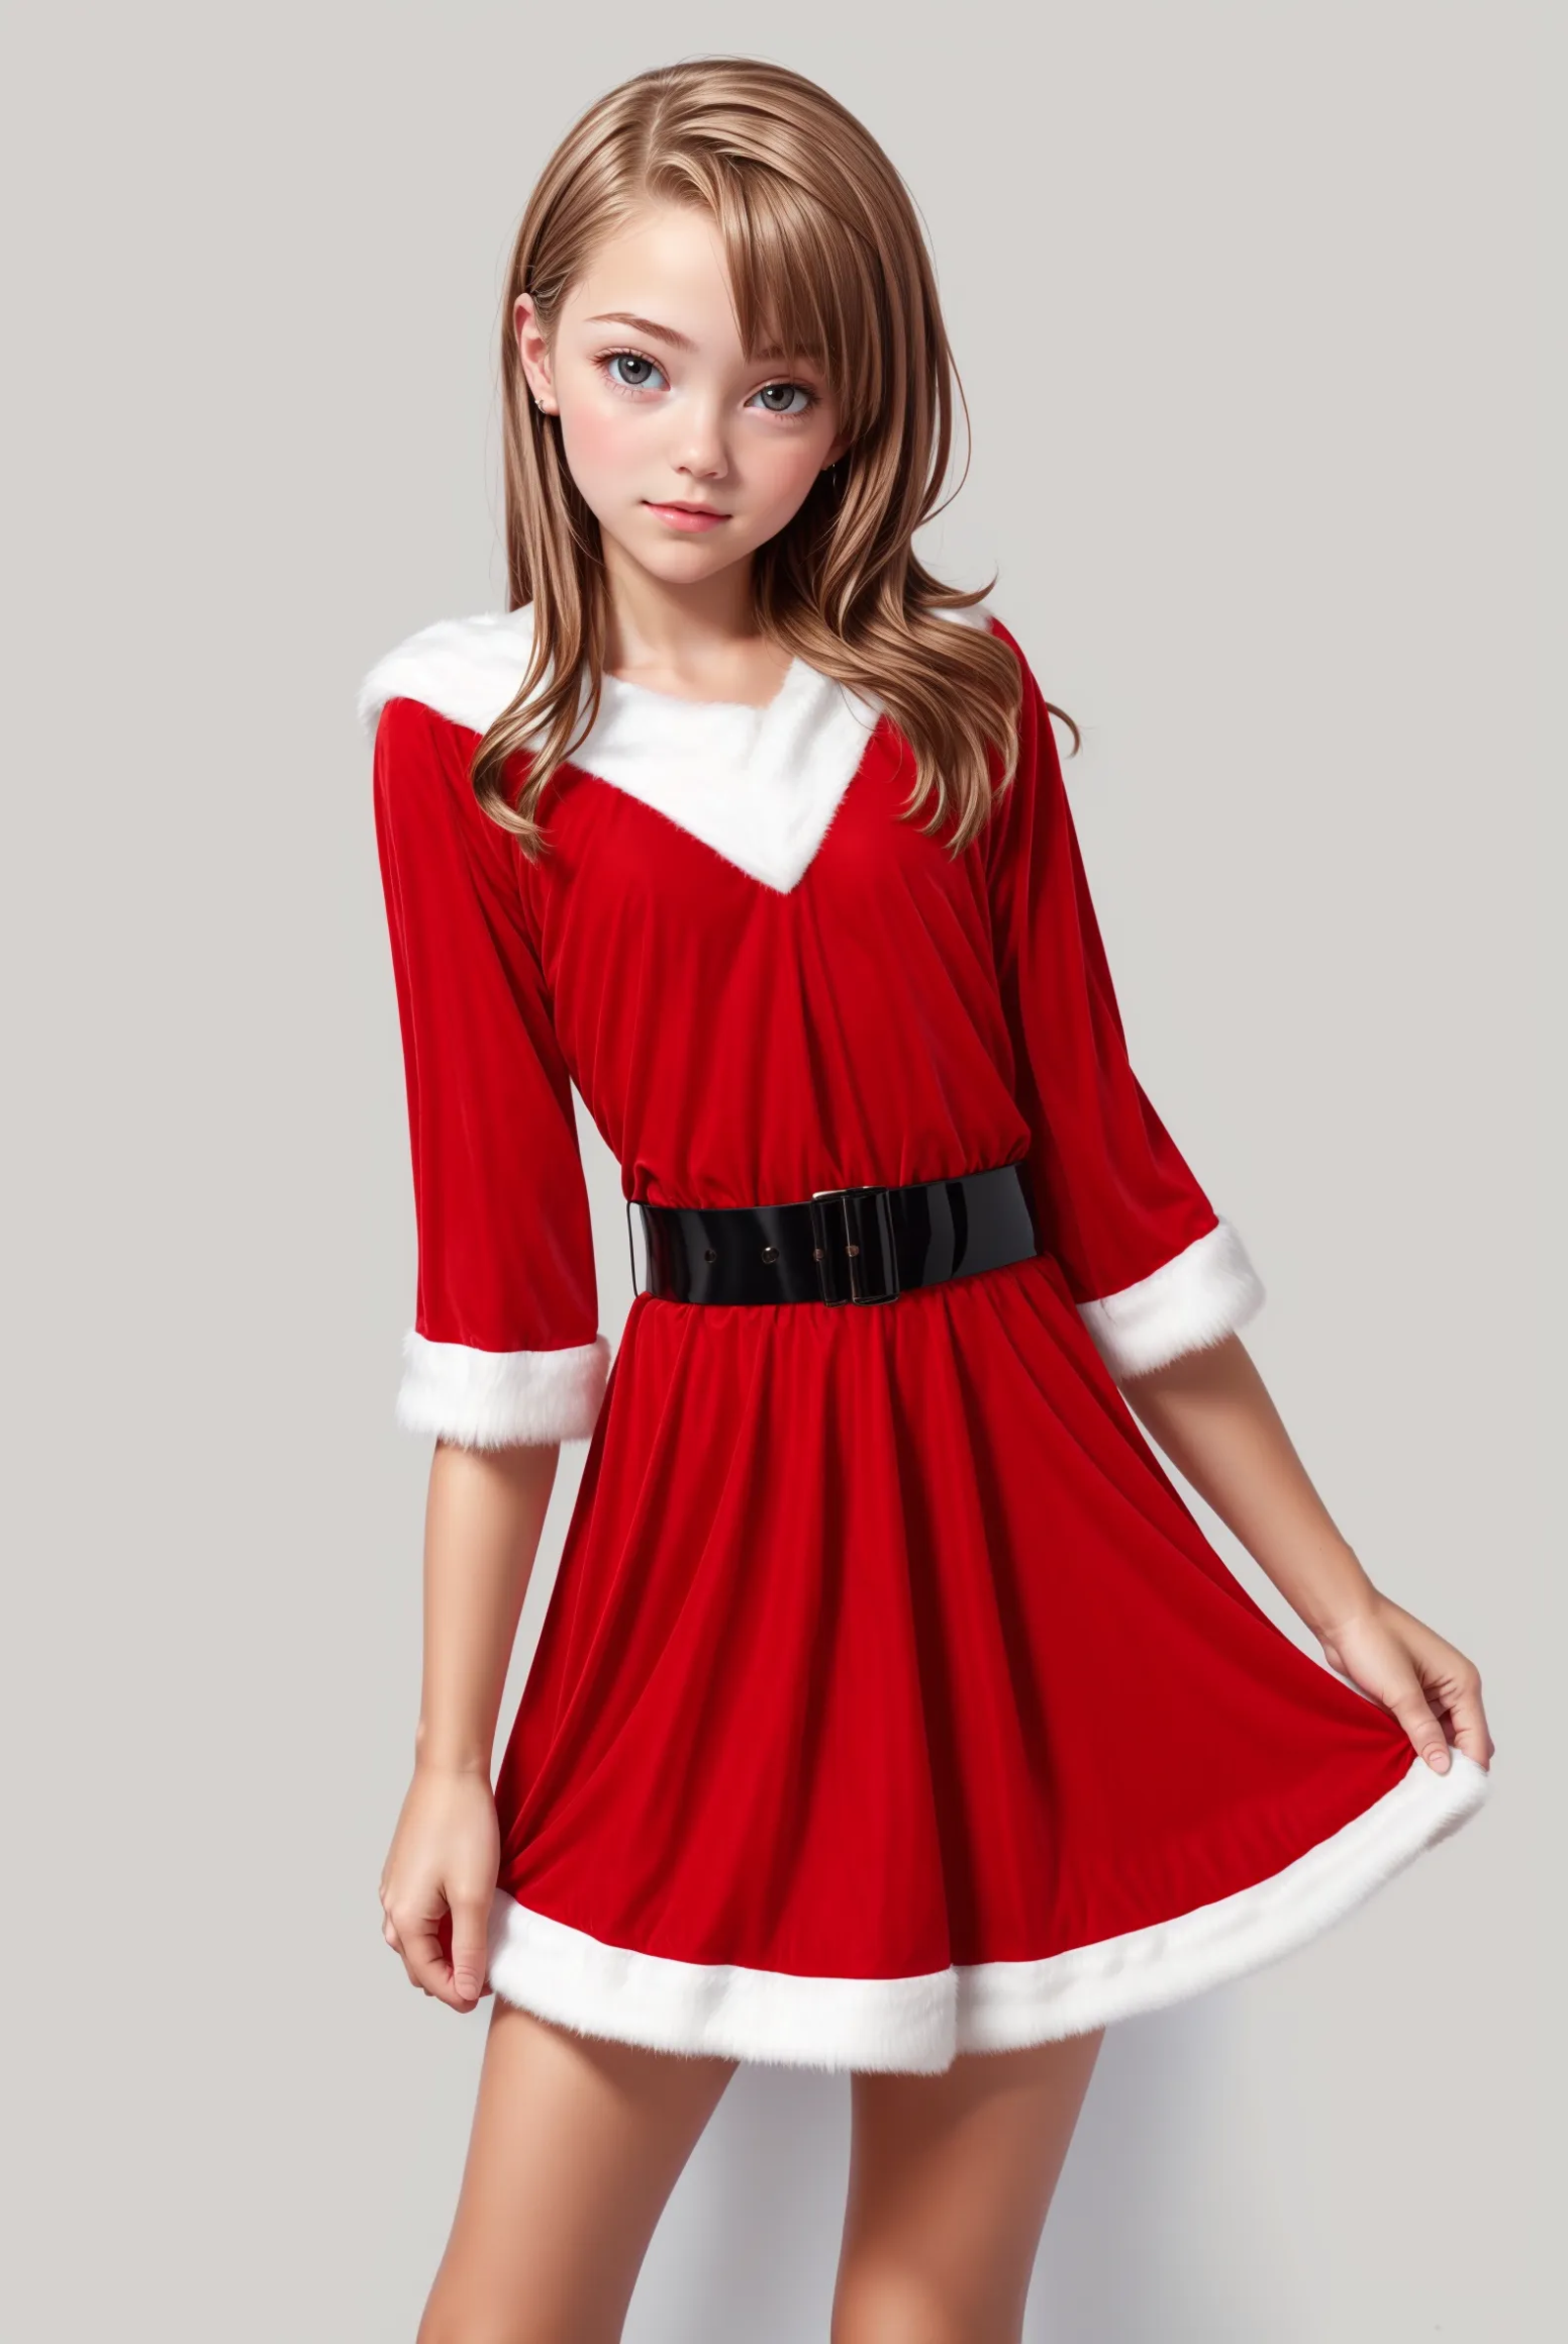 Santa dress image by Pinnacle